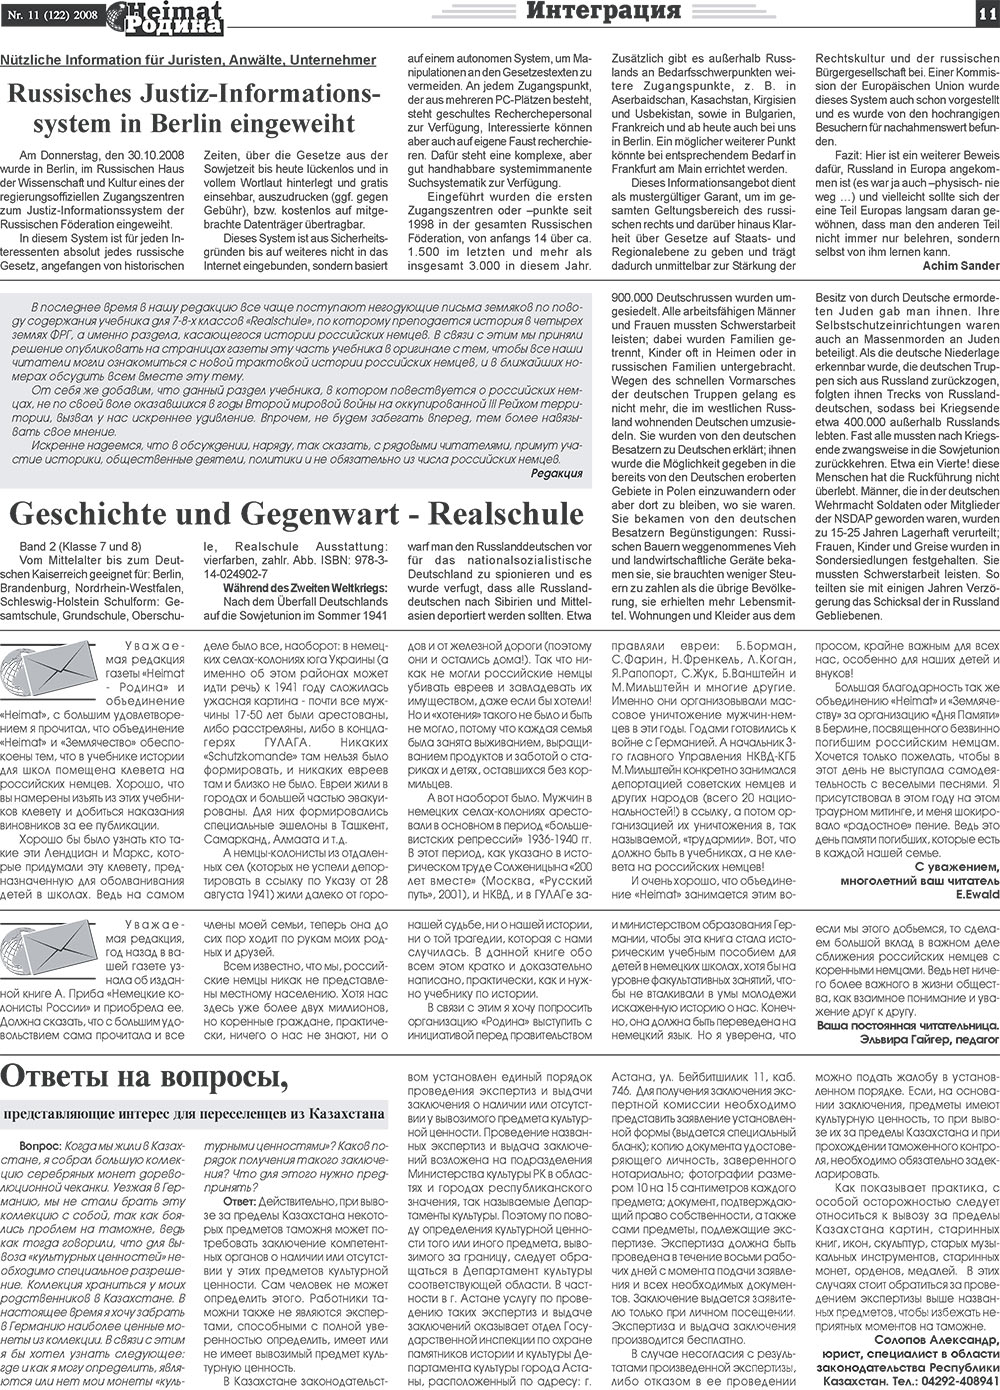 Heimat-Родина (газета). 2008 год, номер 11, стр. 11